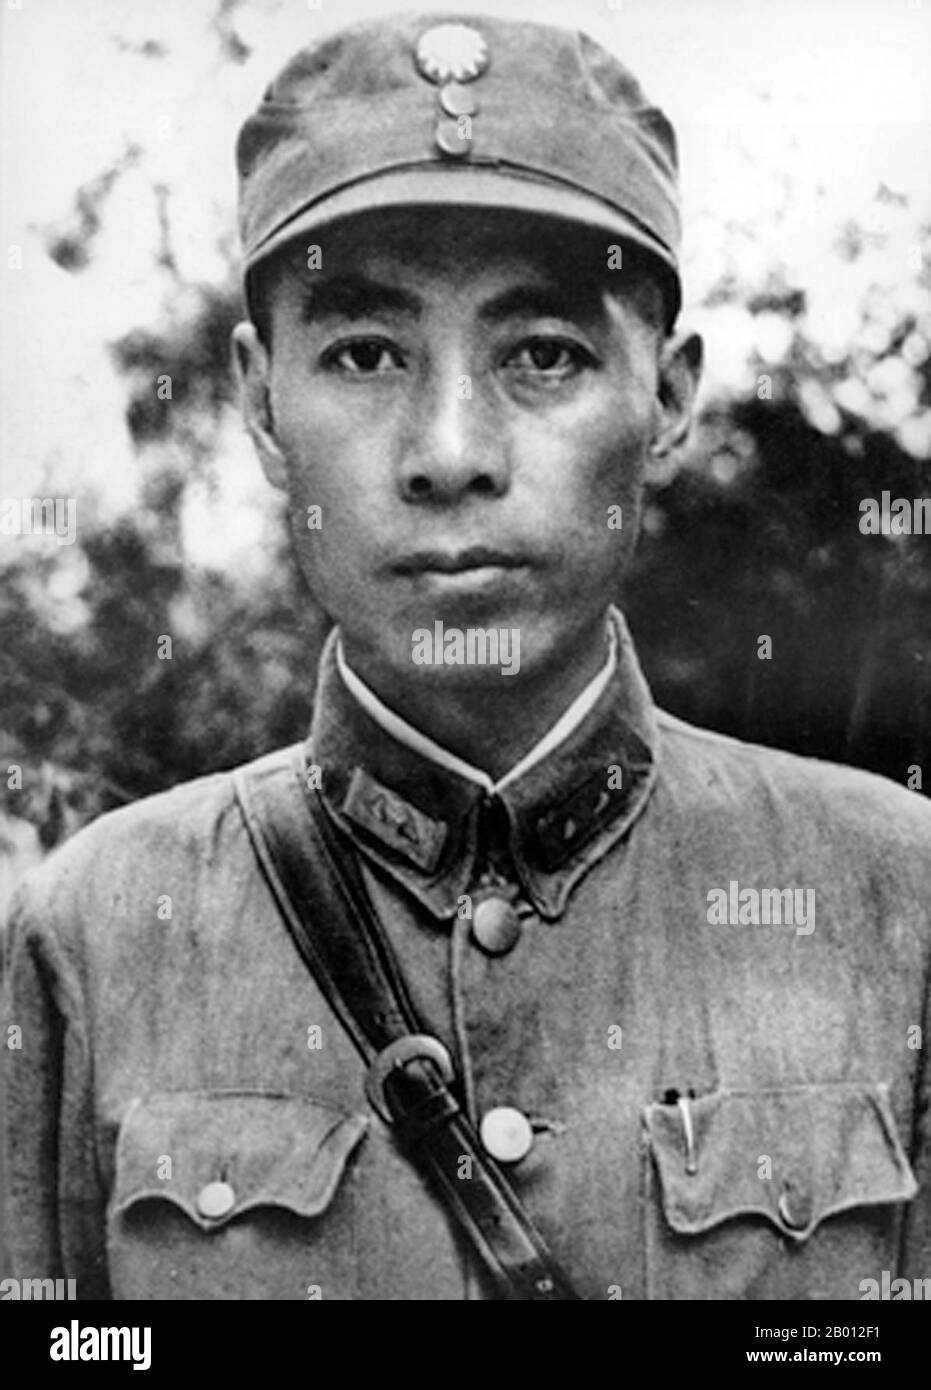 China: Zhou Enlai (Chou en-lai, 5. März 1898 – 8. Januar 1976) an der Whampoa Military Academy, c.. 1926. Zhou Enlai war der erste Premierminister der Volksrepublik China und diente von Oktober 1949 bis zu seinem Tod im Januar 1976. Zhou war maßgeblich am Aufstieg der Kommunistischen Partei zur Macht und anschließend an der Entwicklung der chinesischen Wirtschaft und der Umstrukturierung der chinesischen Gesellschaft beteiligt. Stockfoto